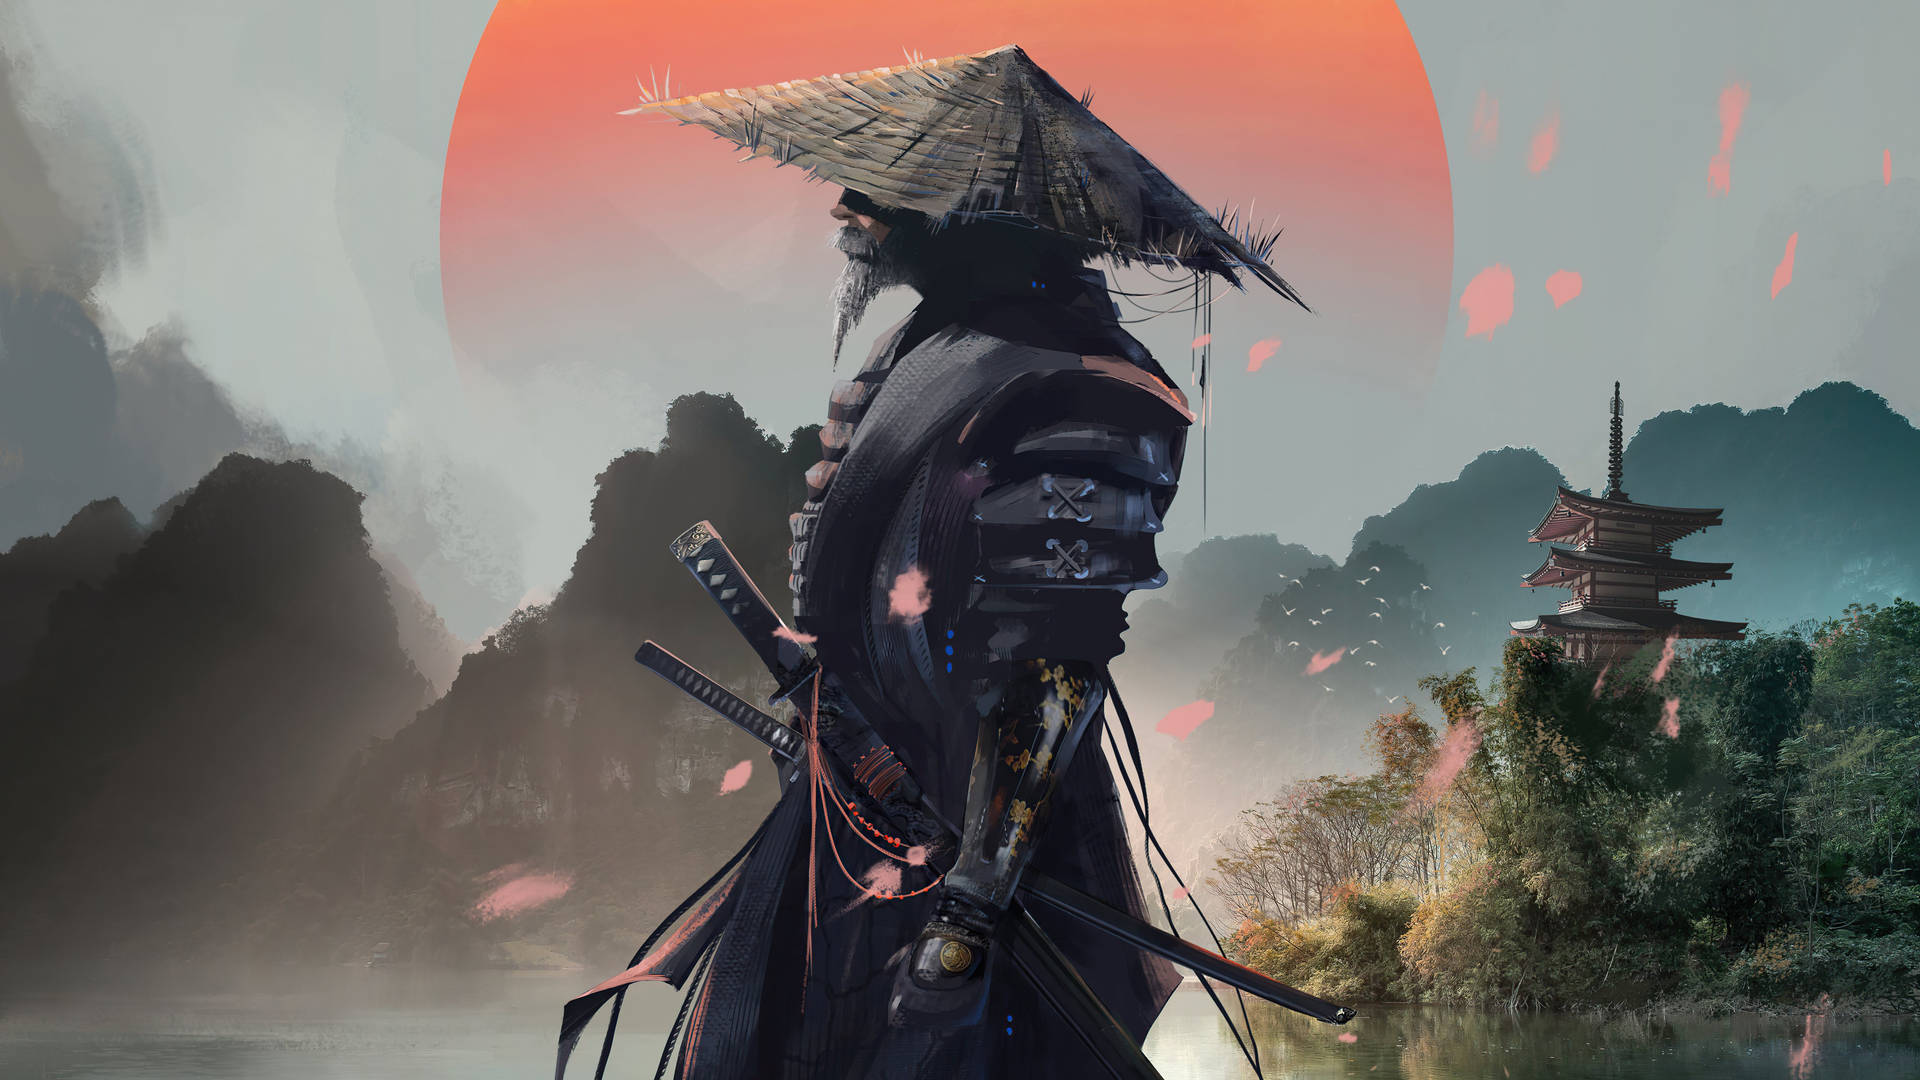 Samurai Returns 4K Live Wallpaper